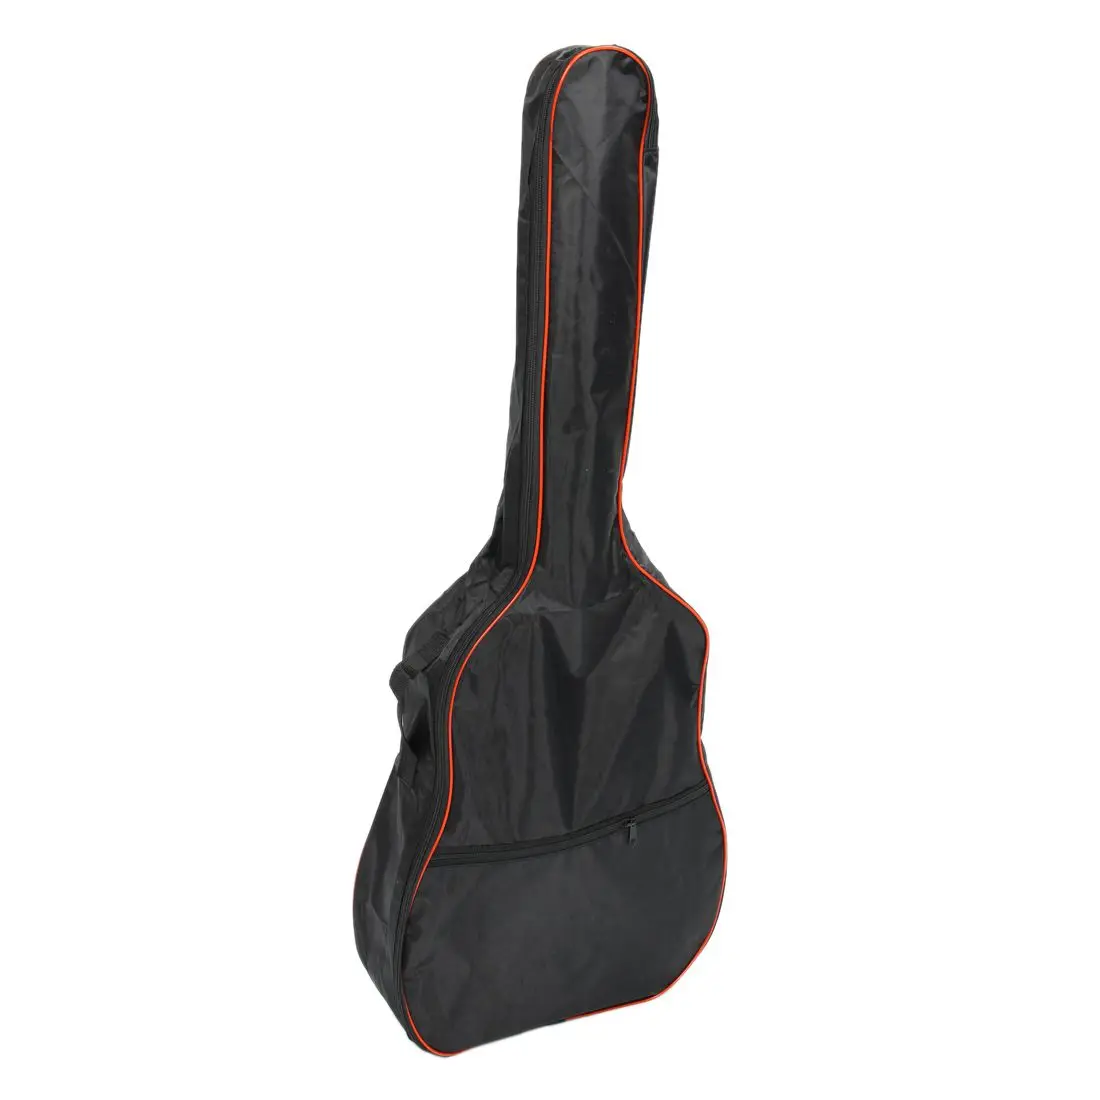 41 дюймов Классическая акустическая гитара Back Carry чехол Сумка 5 мм плечевые ремни